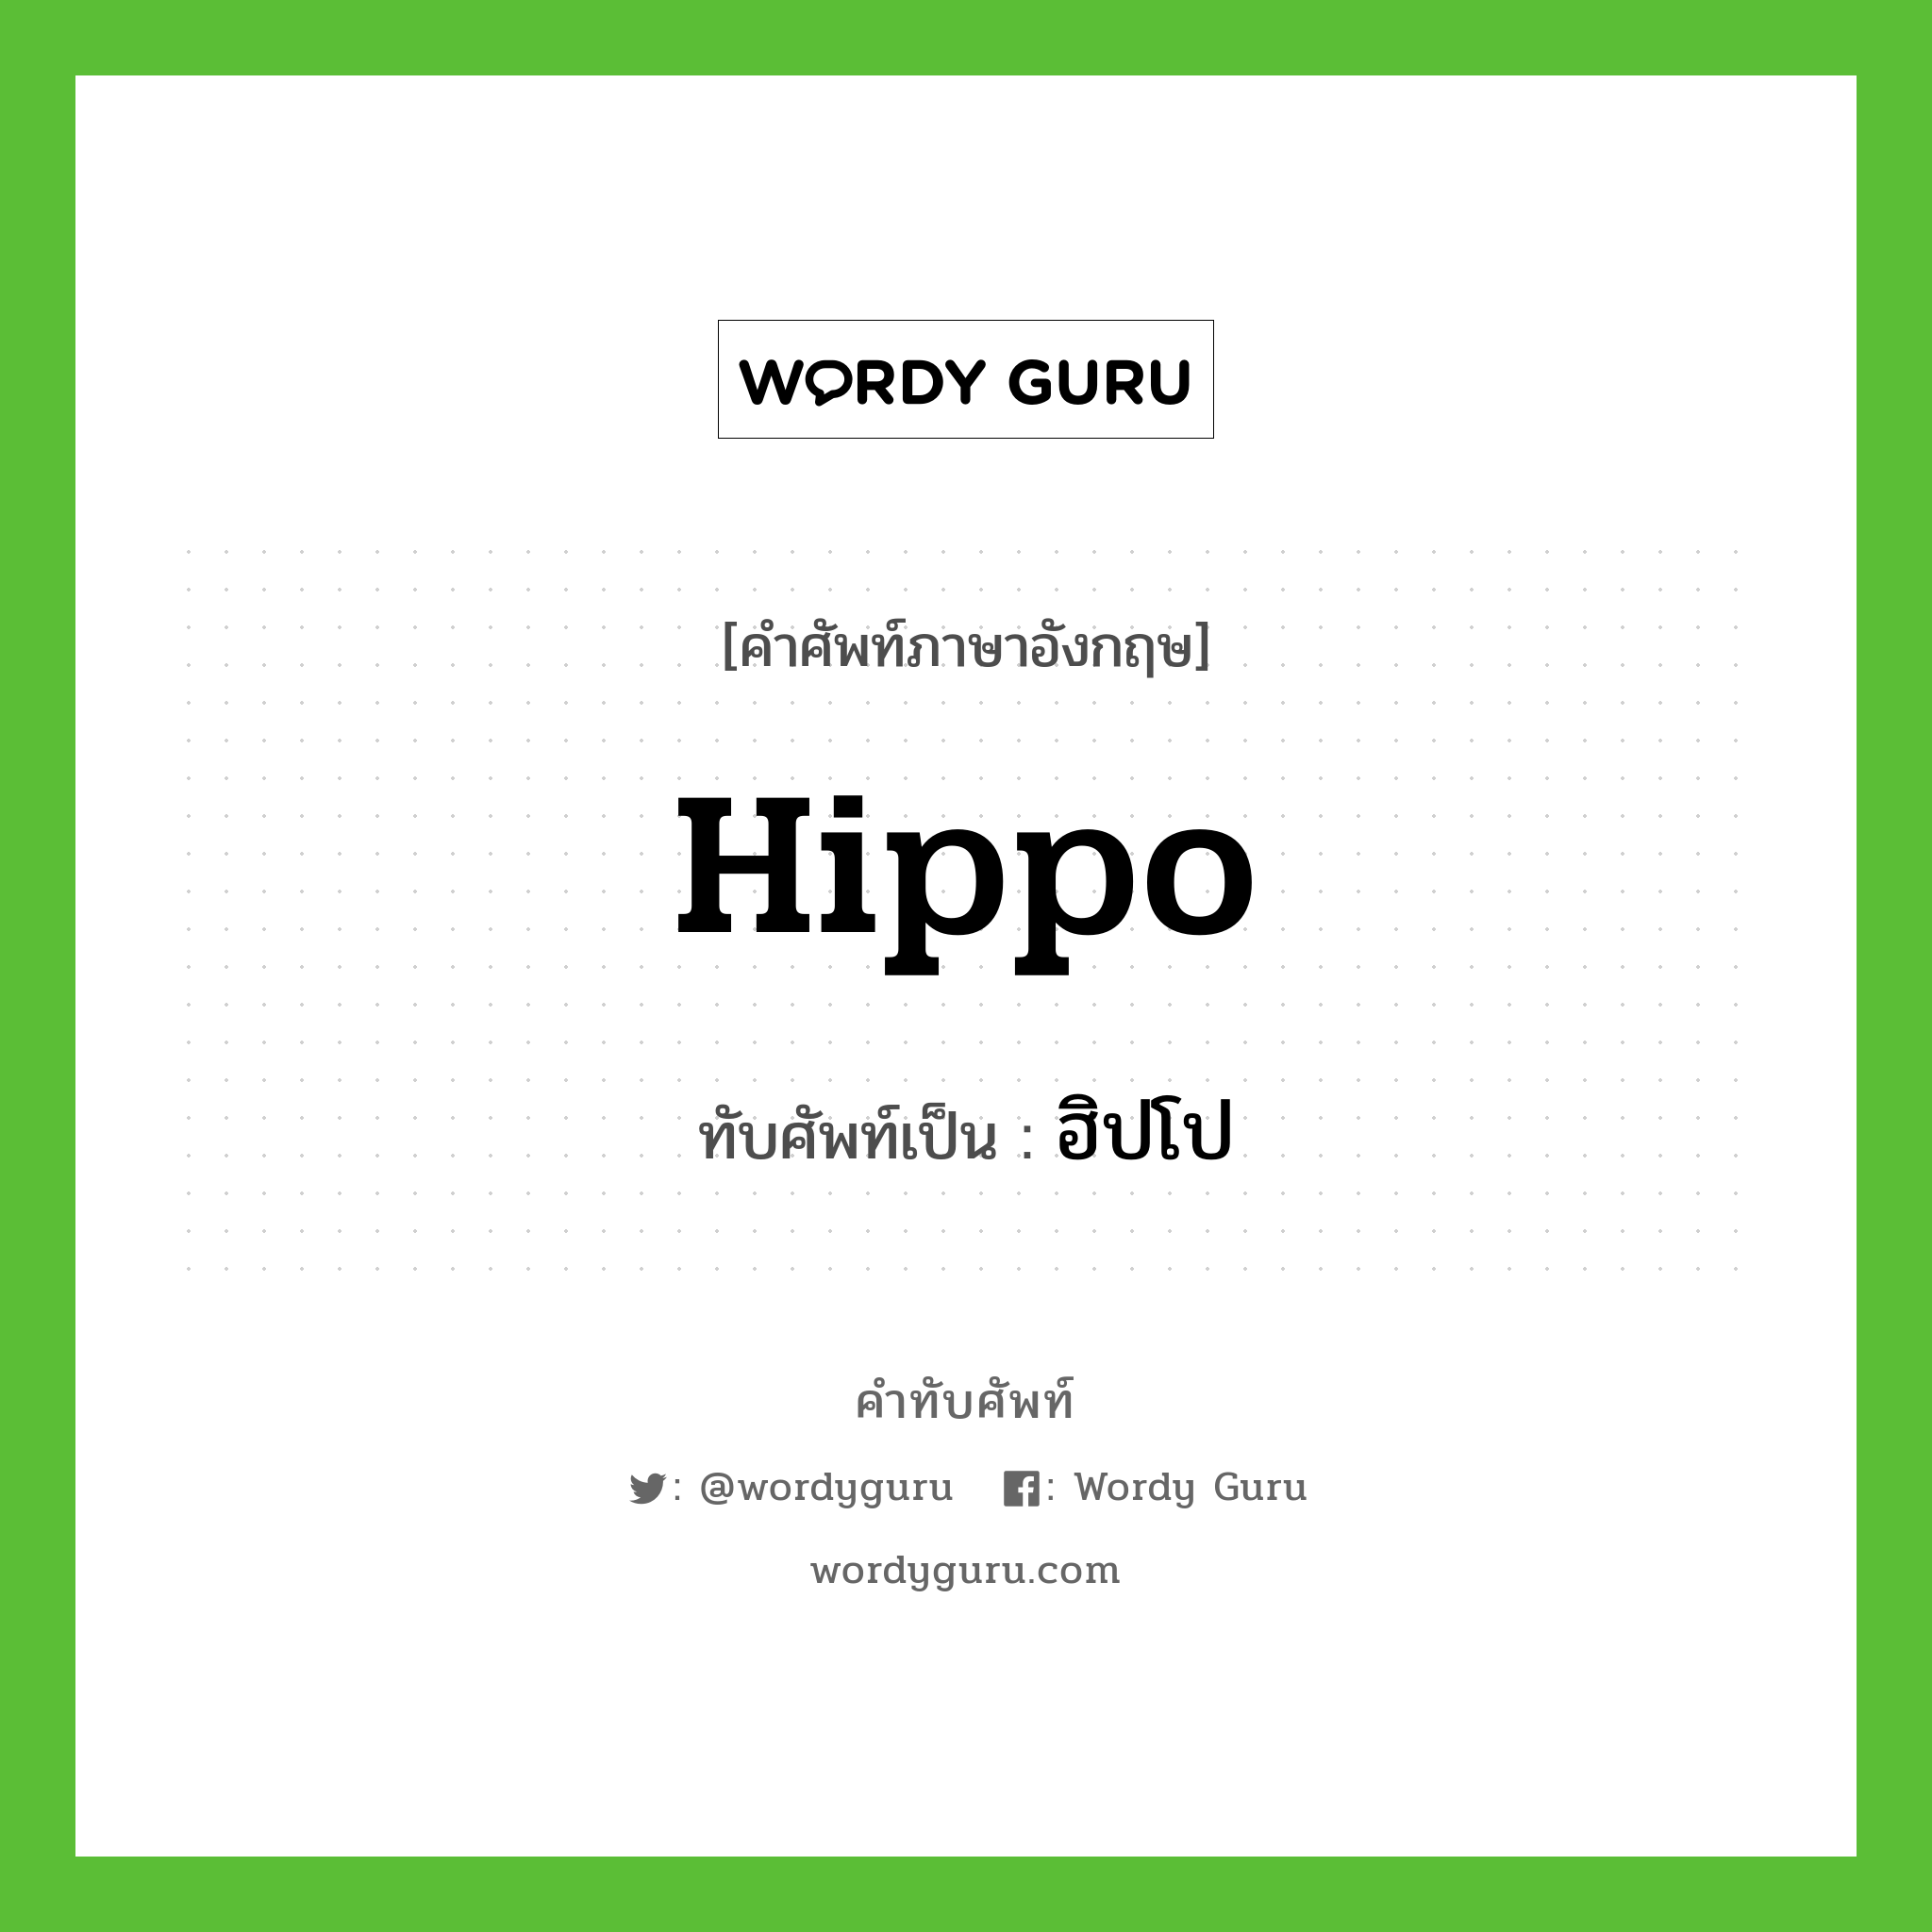 ฮิปโป เขียนอย่างไร?, คำศัพท์ภาษาอังกฤษ ฮิปโป ทับศัพท์เป็น hippo